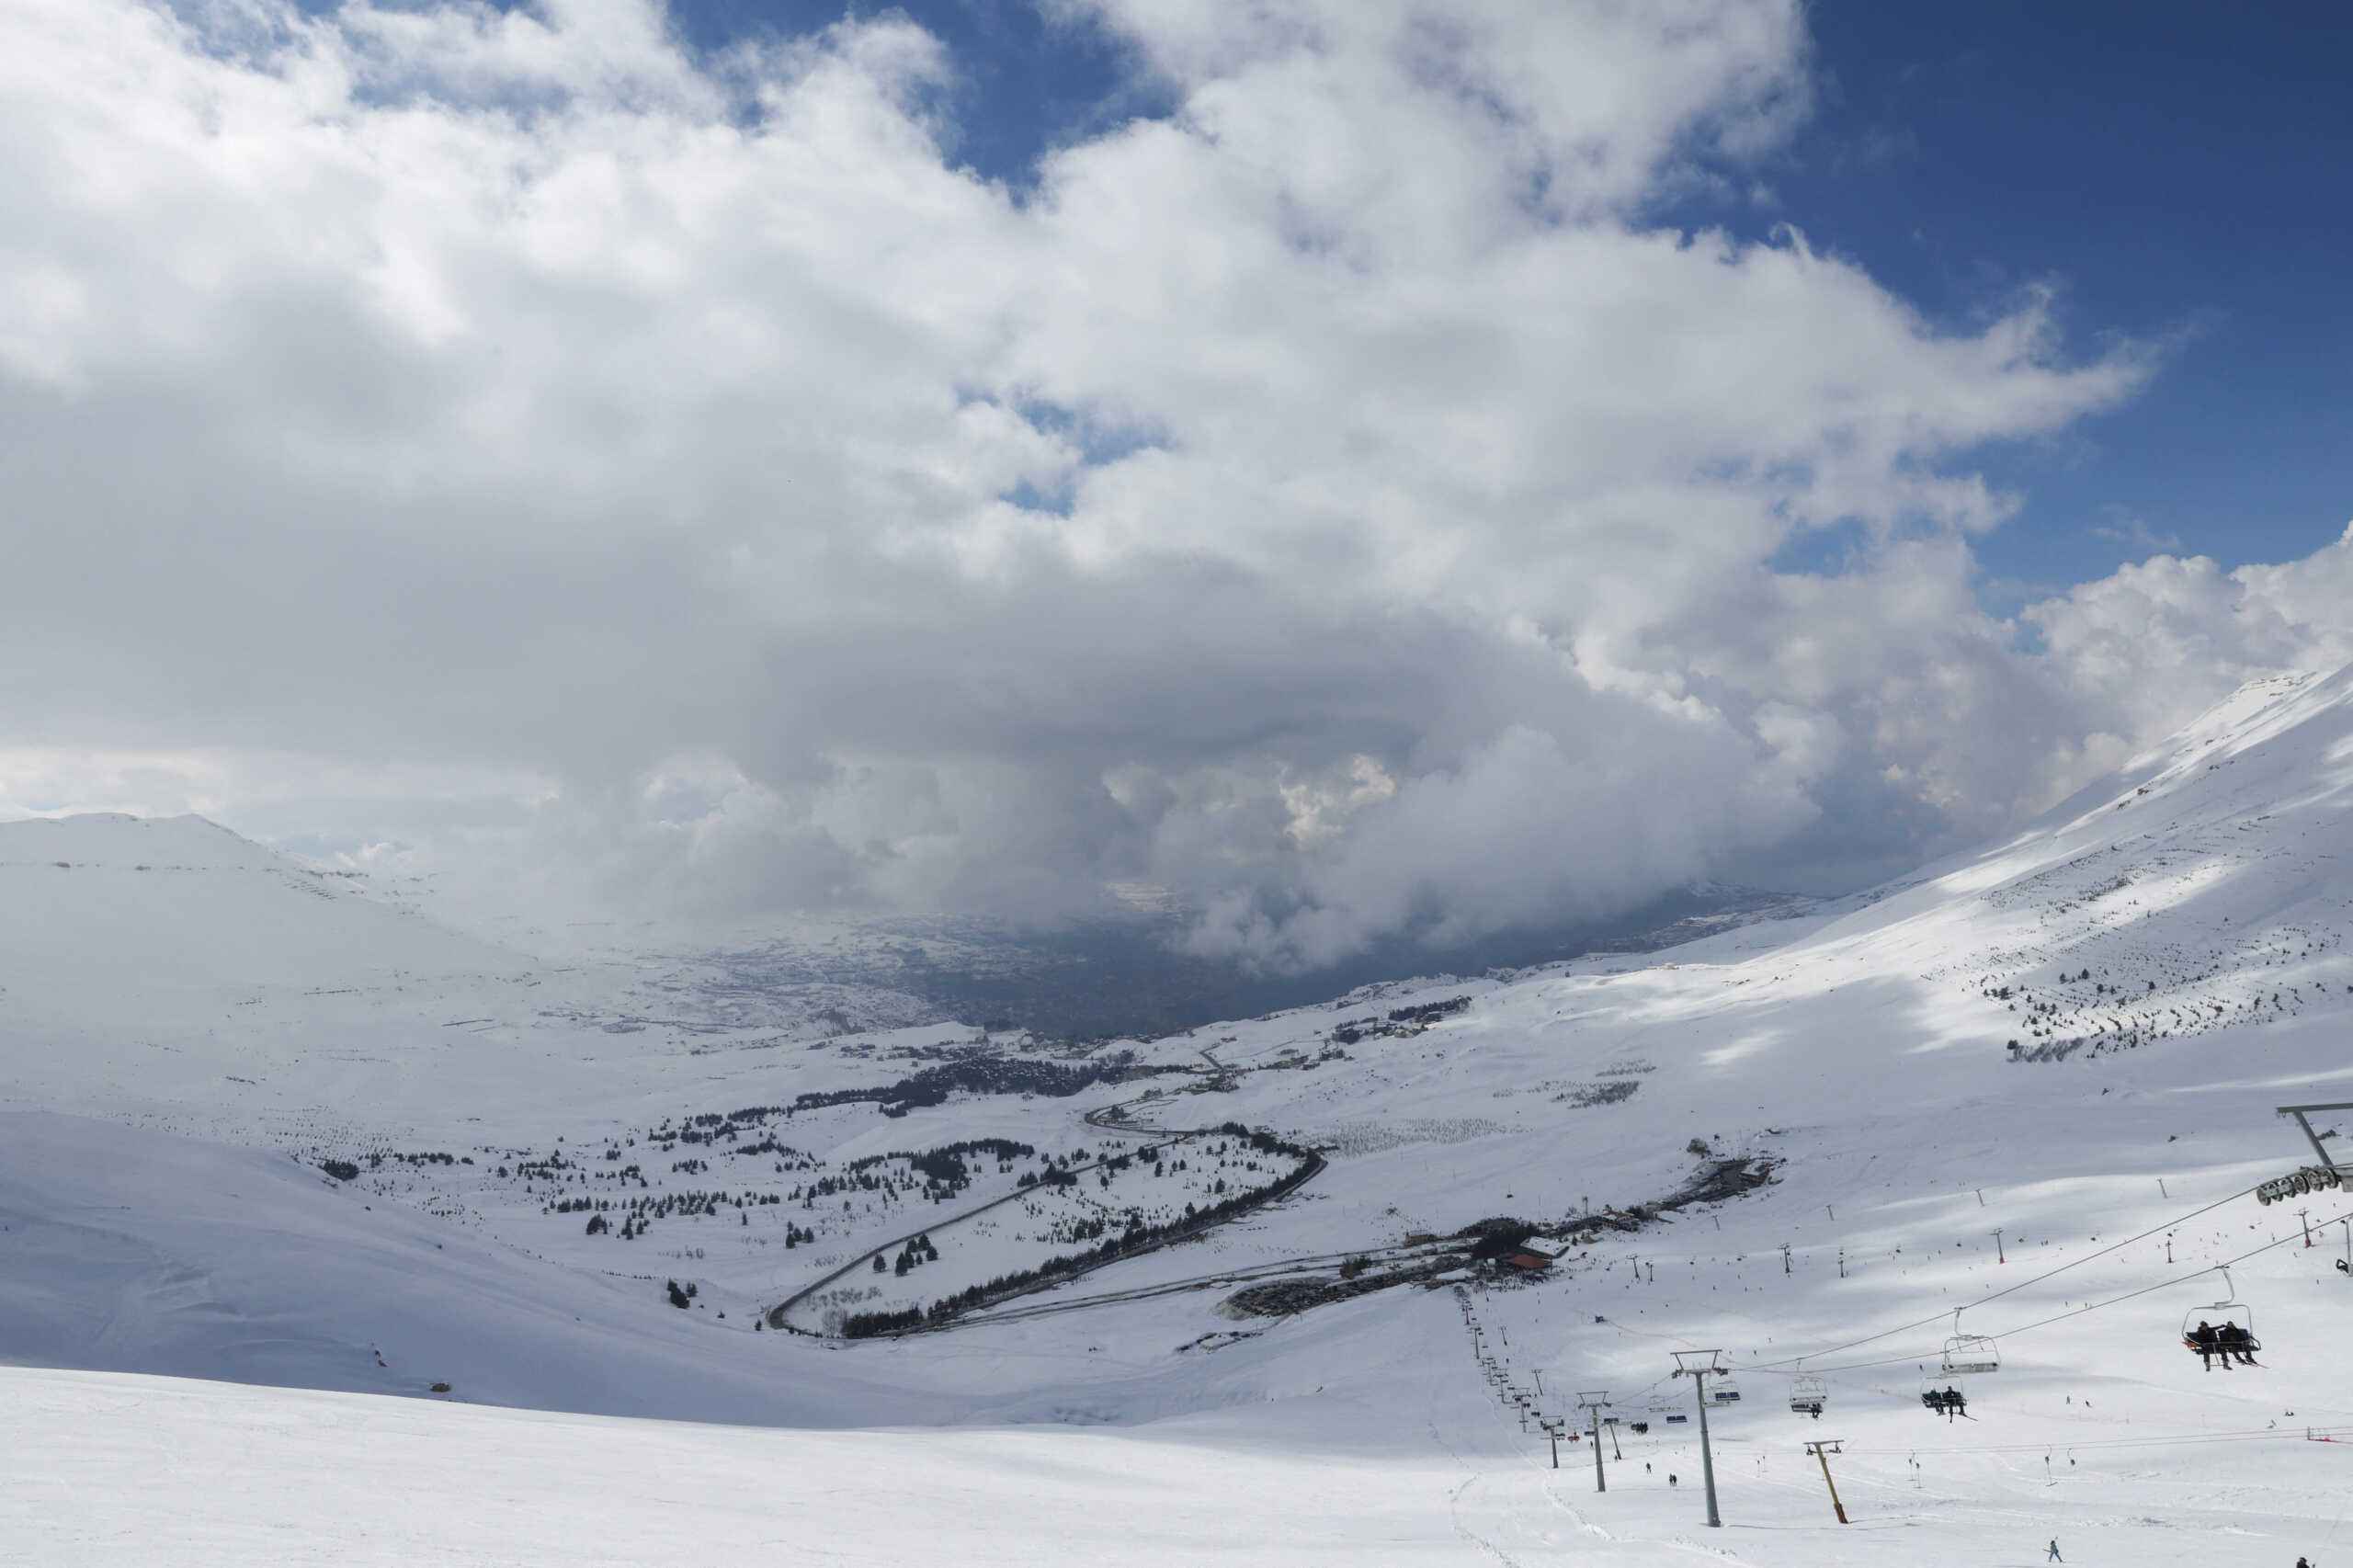 Βουλγαρία: Νεκρός ο Έλληνας σκιέρ που καταπλακώθηκε από χιονοστιβάδα στο χιονοδρομικό κέντρο του Μποροβετς